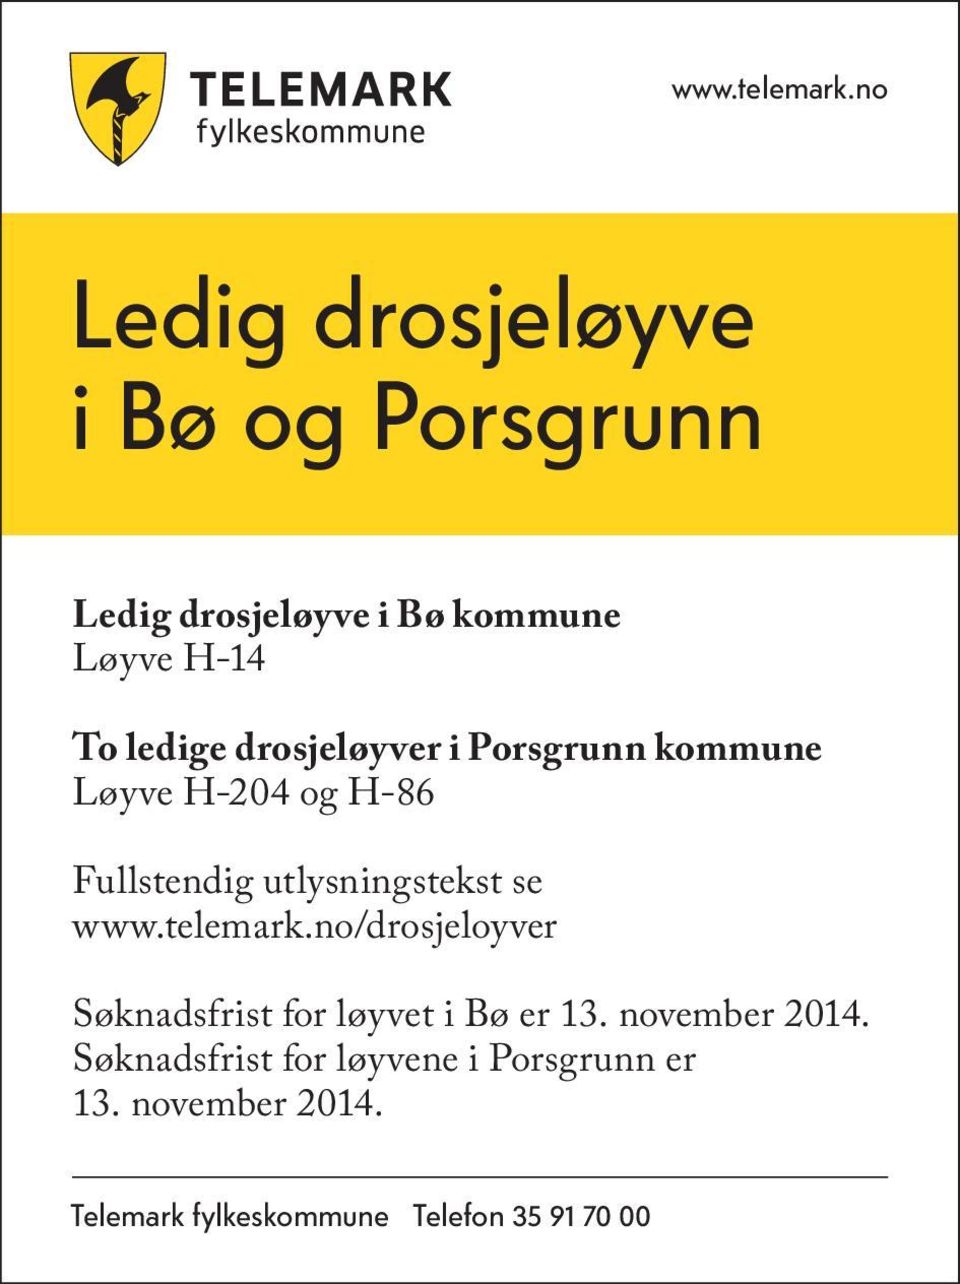 telemark.no/drosjeloyver Søknadsfrist for løyvet i Bø er 13. november 2014.